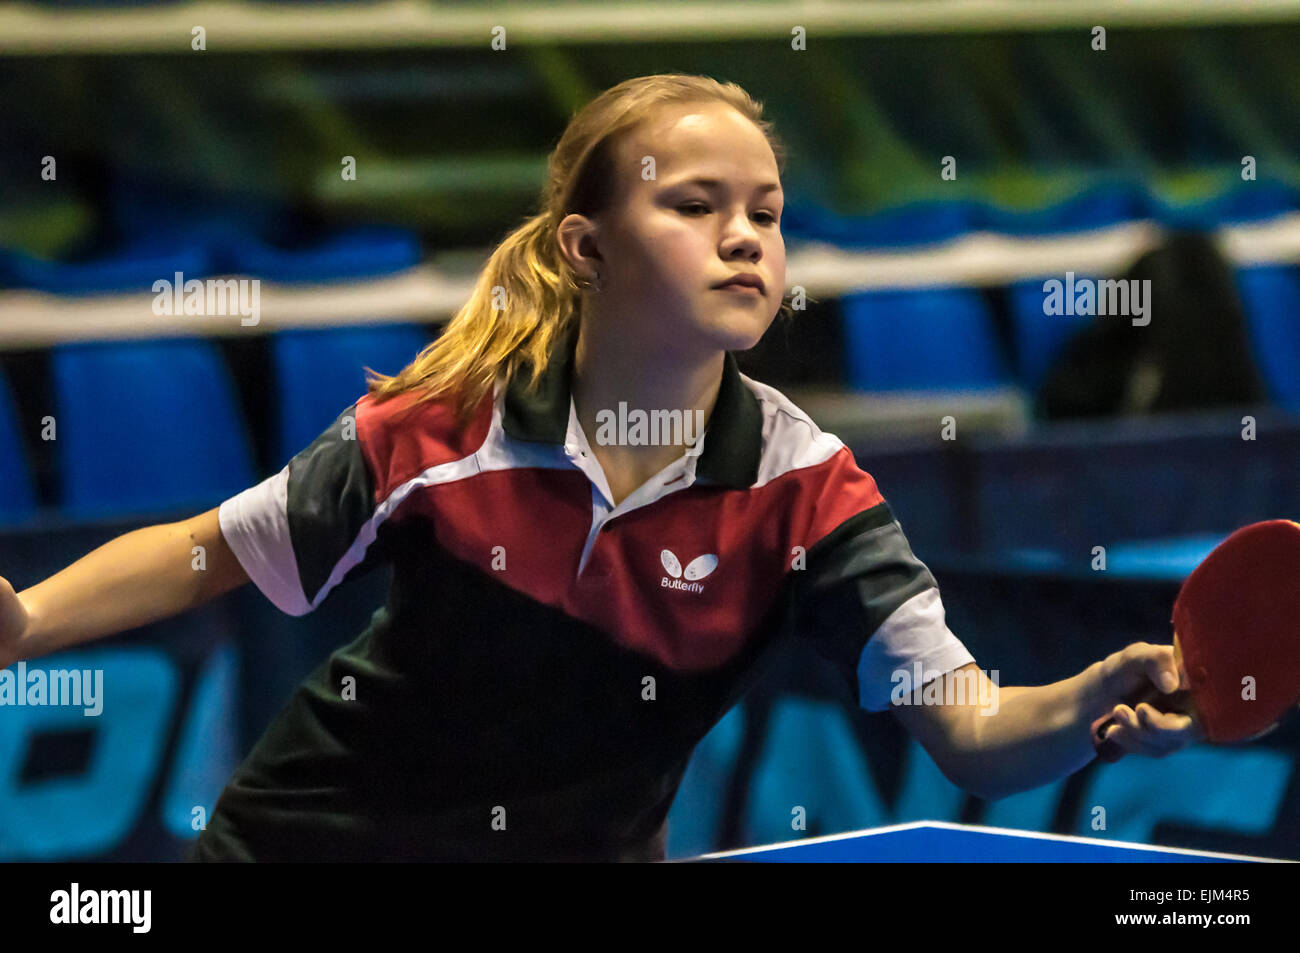 ORENBURG, regione di Orenburg, Russia - 5 February 2015: Ragazza giocando a ping-pong al torneo gli atleti più forti della Russia 'TOP - 12' nel tennis da tavolo Foto Stock